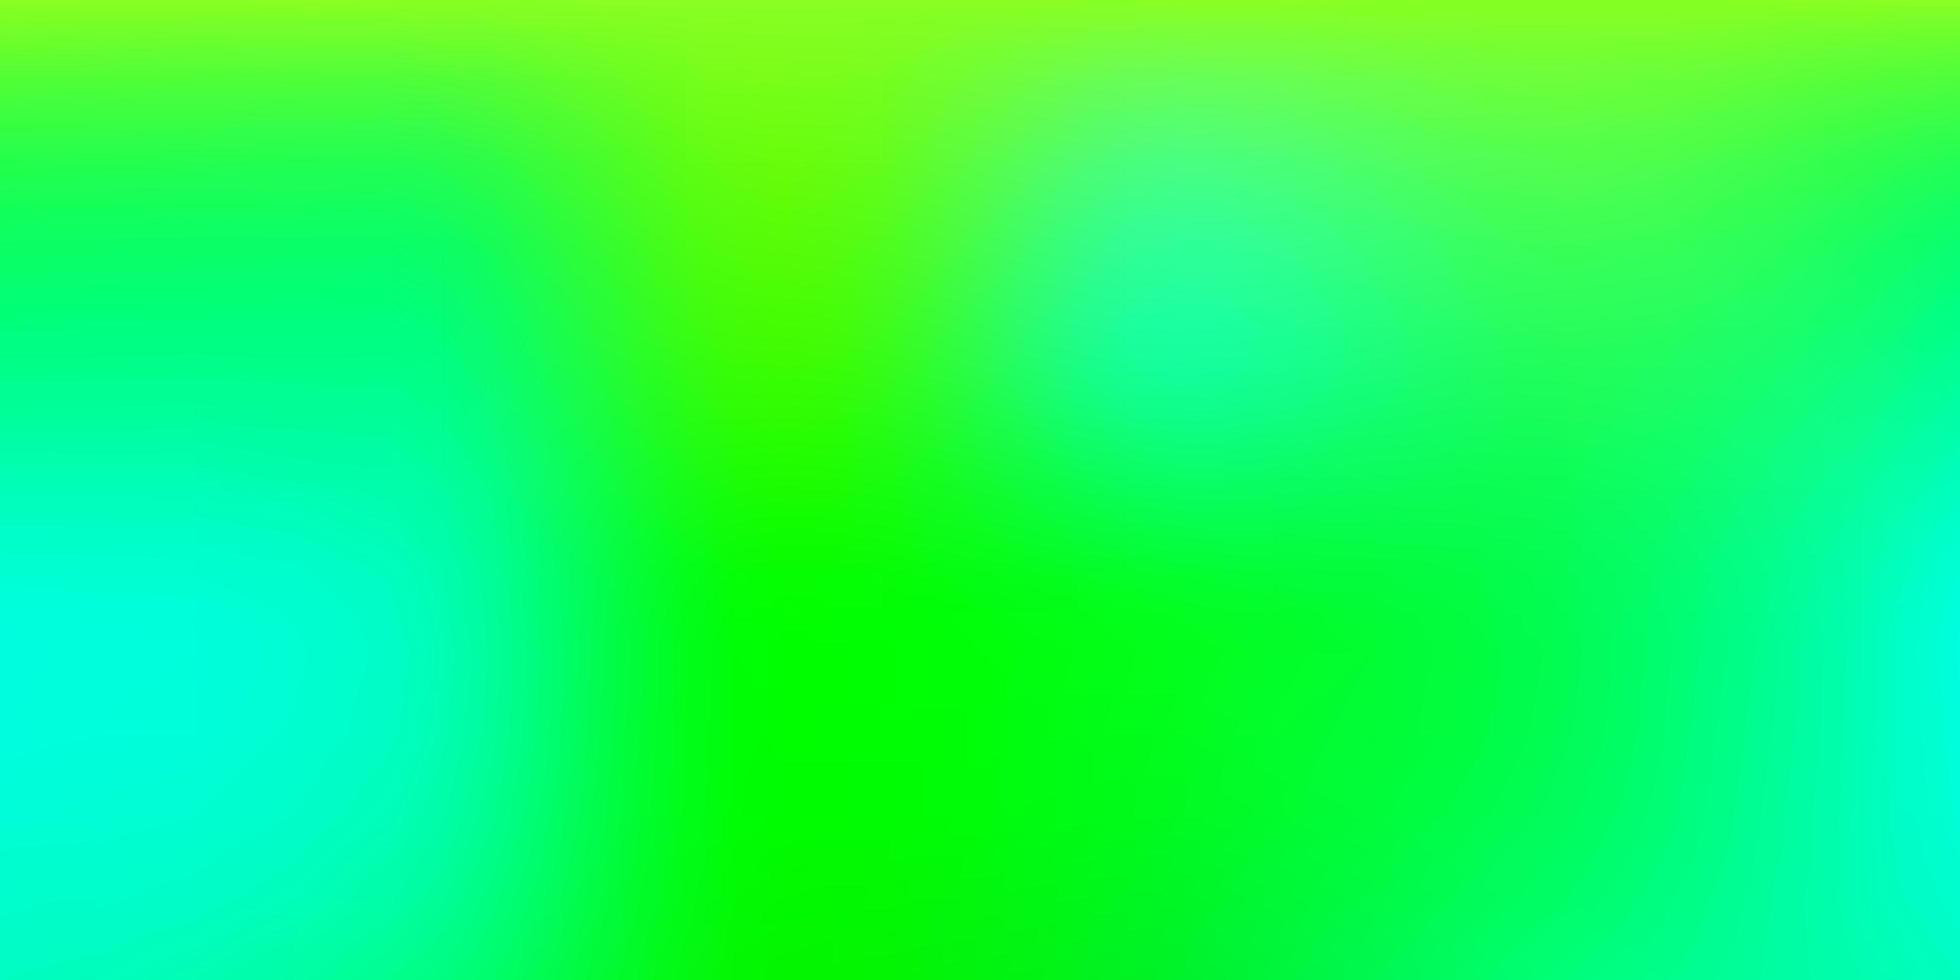 Light Blue, Green vector abstract blur layout.